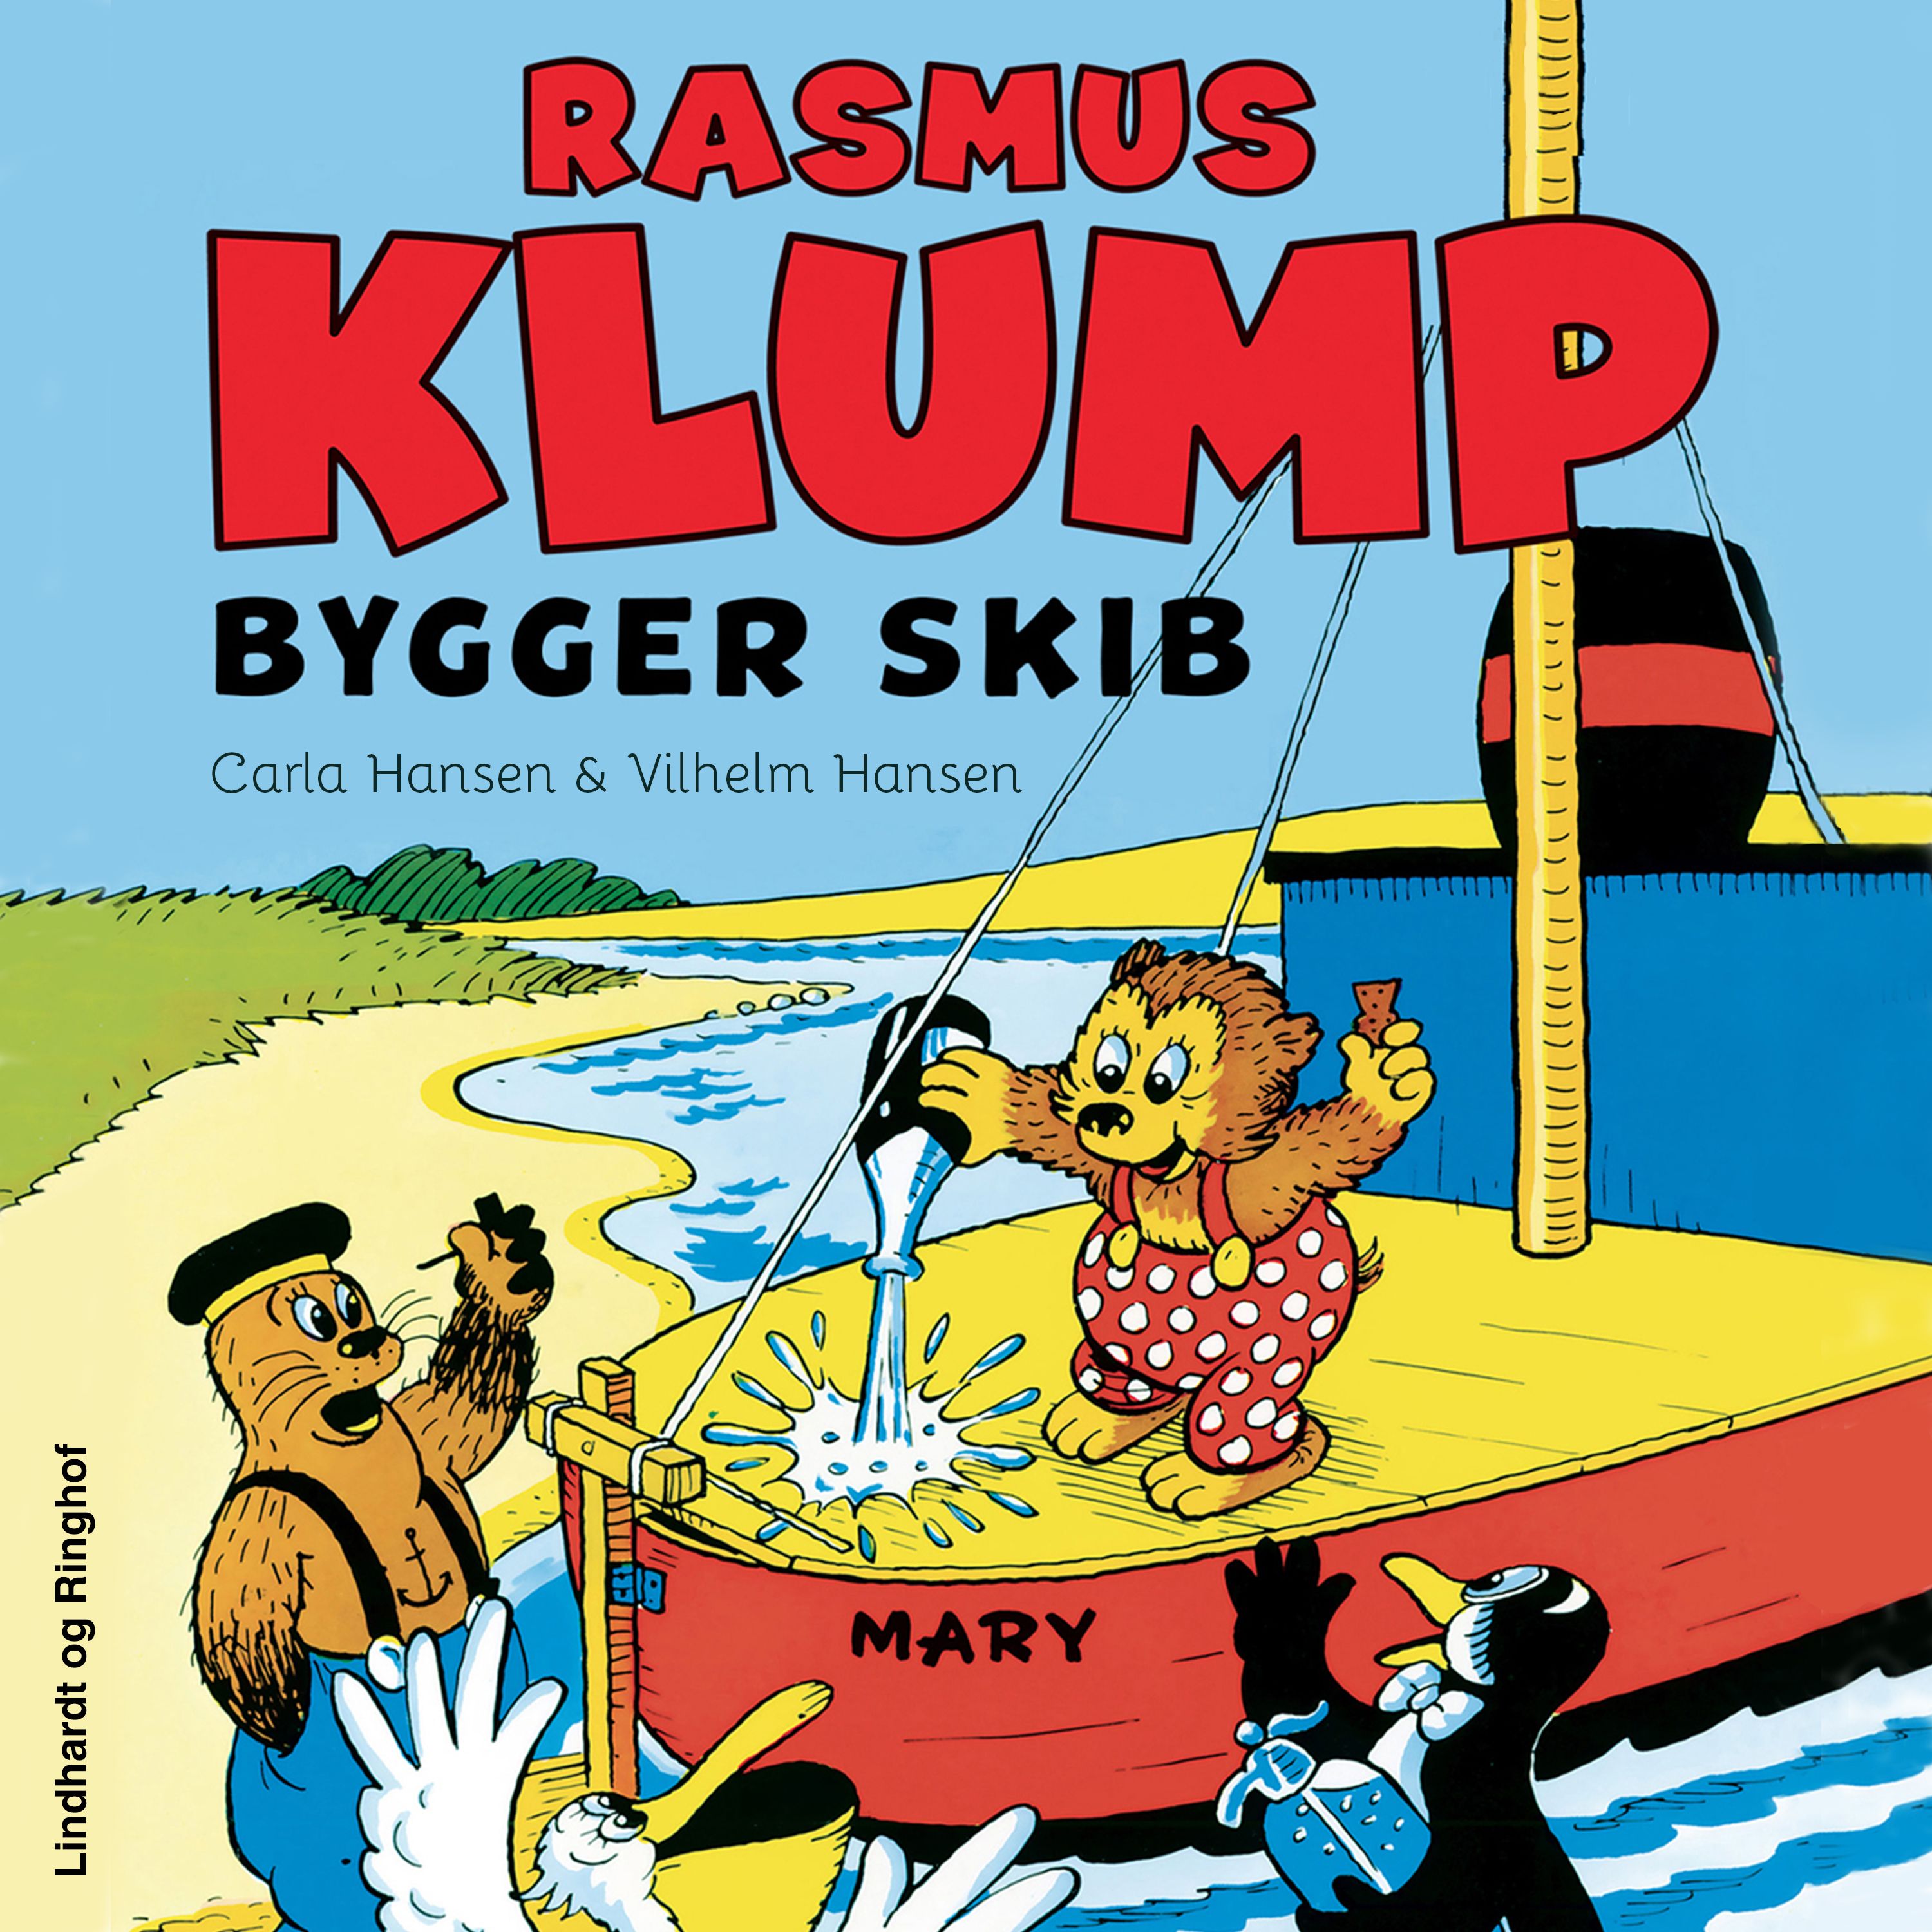 Rasmus Klump bygger skib, ljudbok av Carla Hansen, Vilhelm Hansen